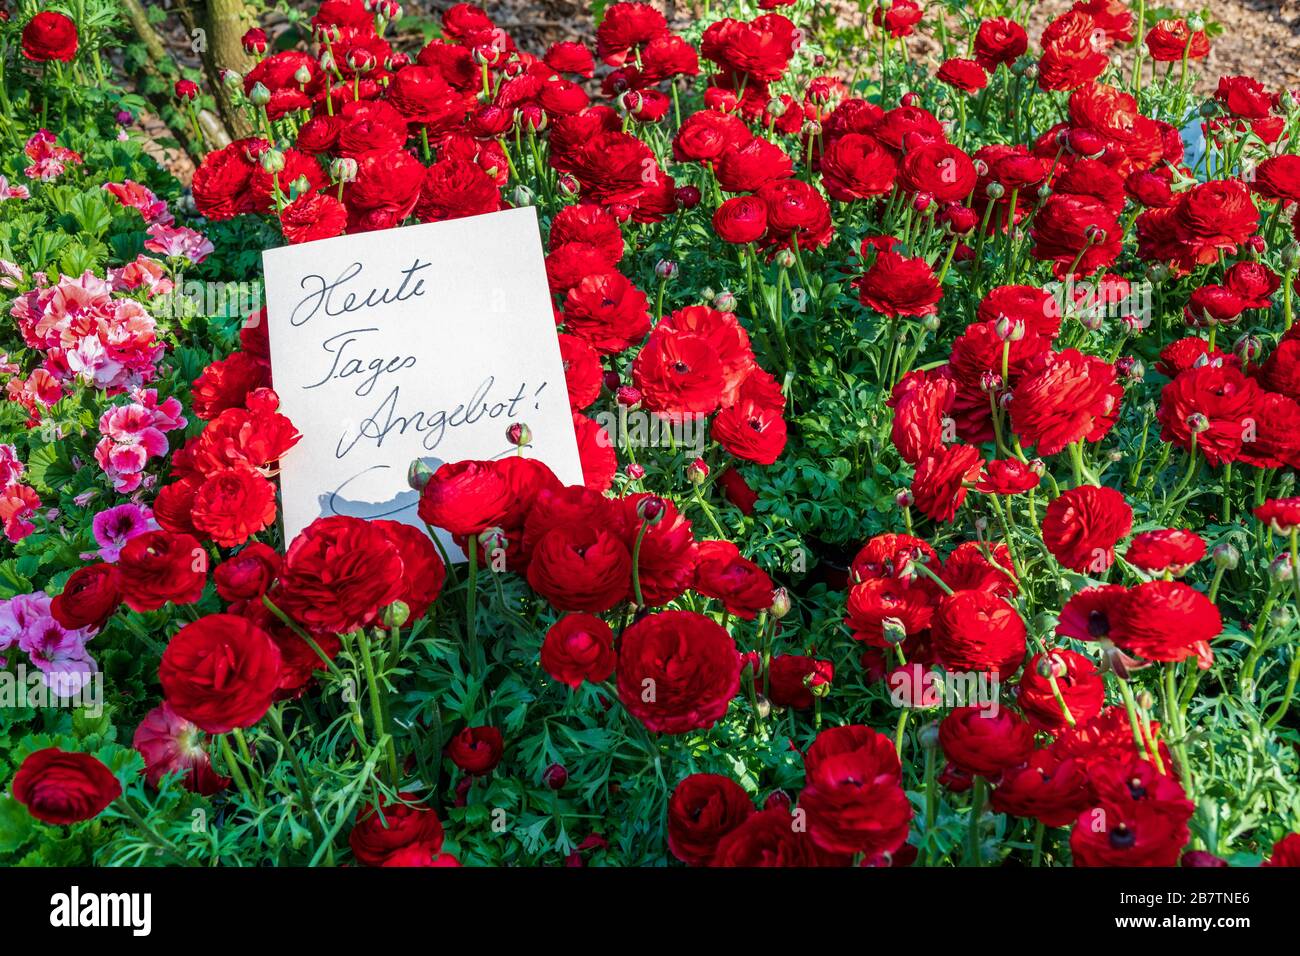 Fleurs de ranunculus rouge vif et signe blanc avec texte allemand manuscrit 'offre spéciale du jour'. Concept de printemps ou de vente, remise Banque D'Images